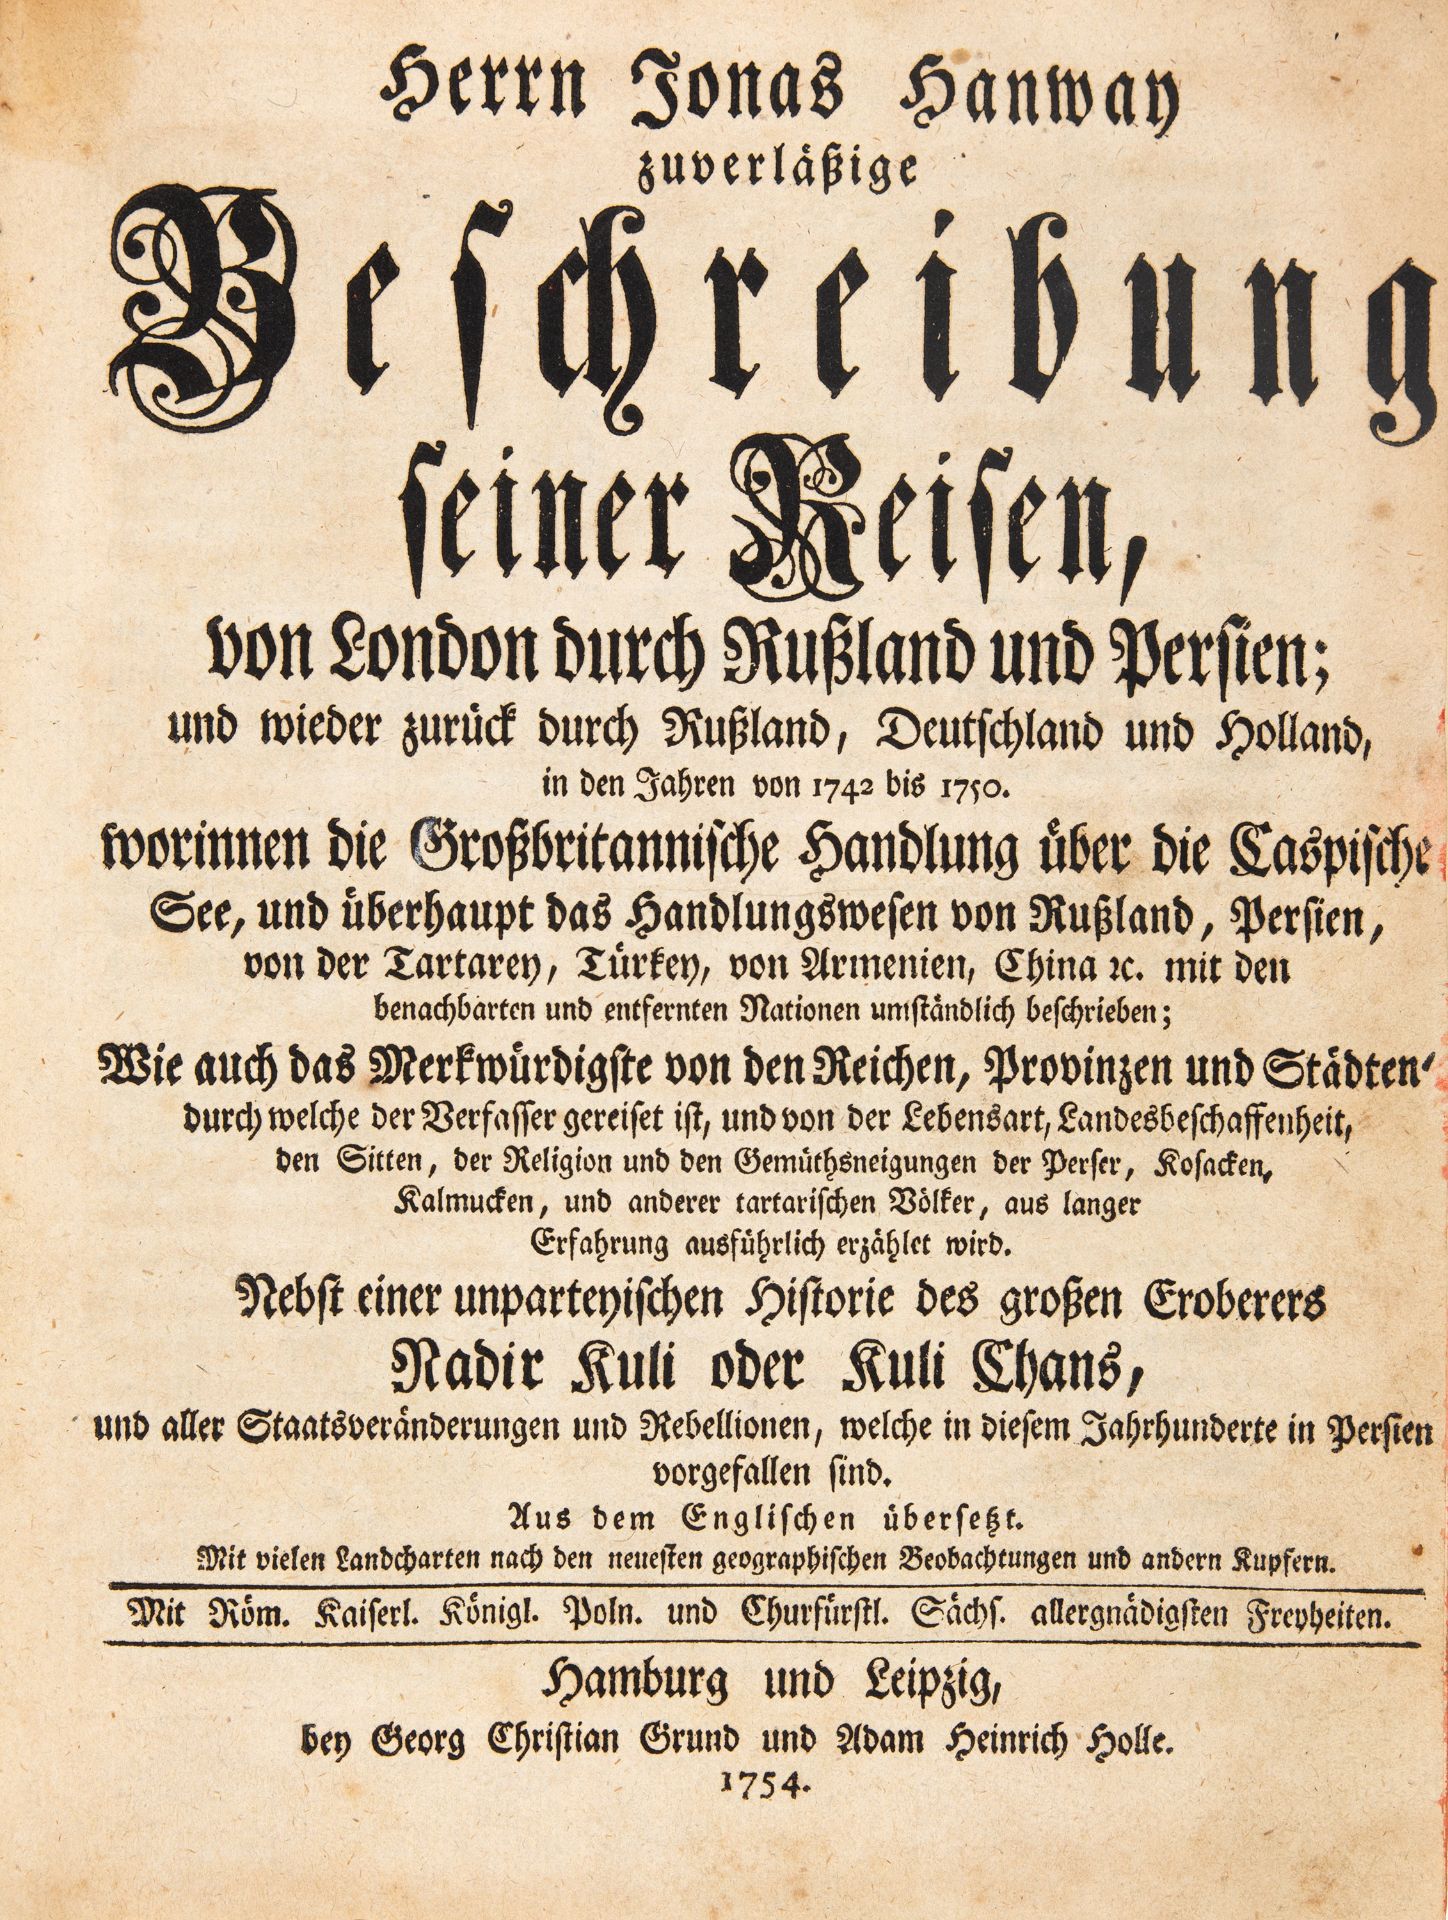 J. Hanway, Zuverlässige Beschreibung seiner Reisen. Hamburg u. Leipzig 1754.